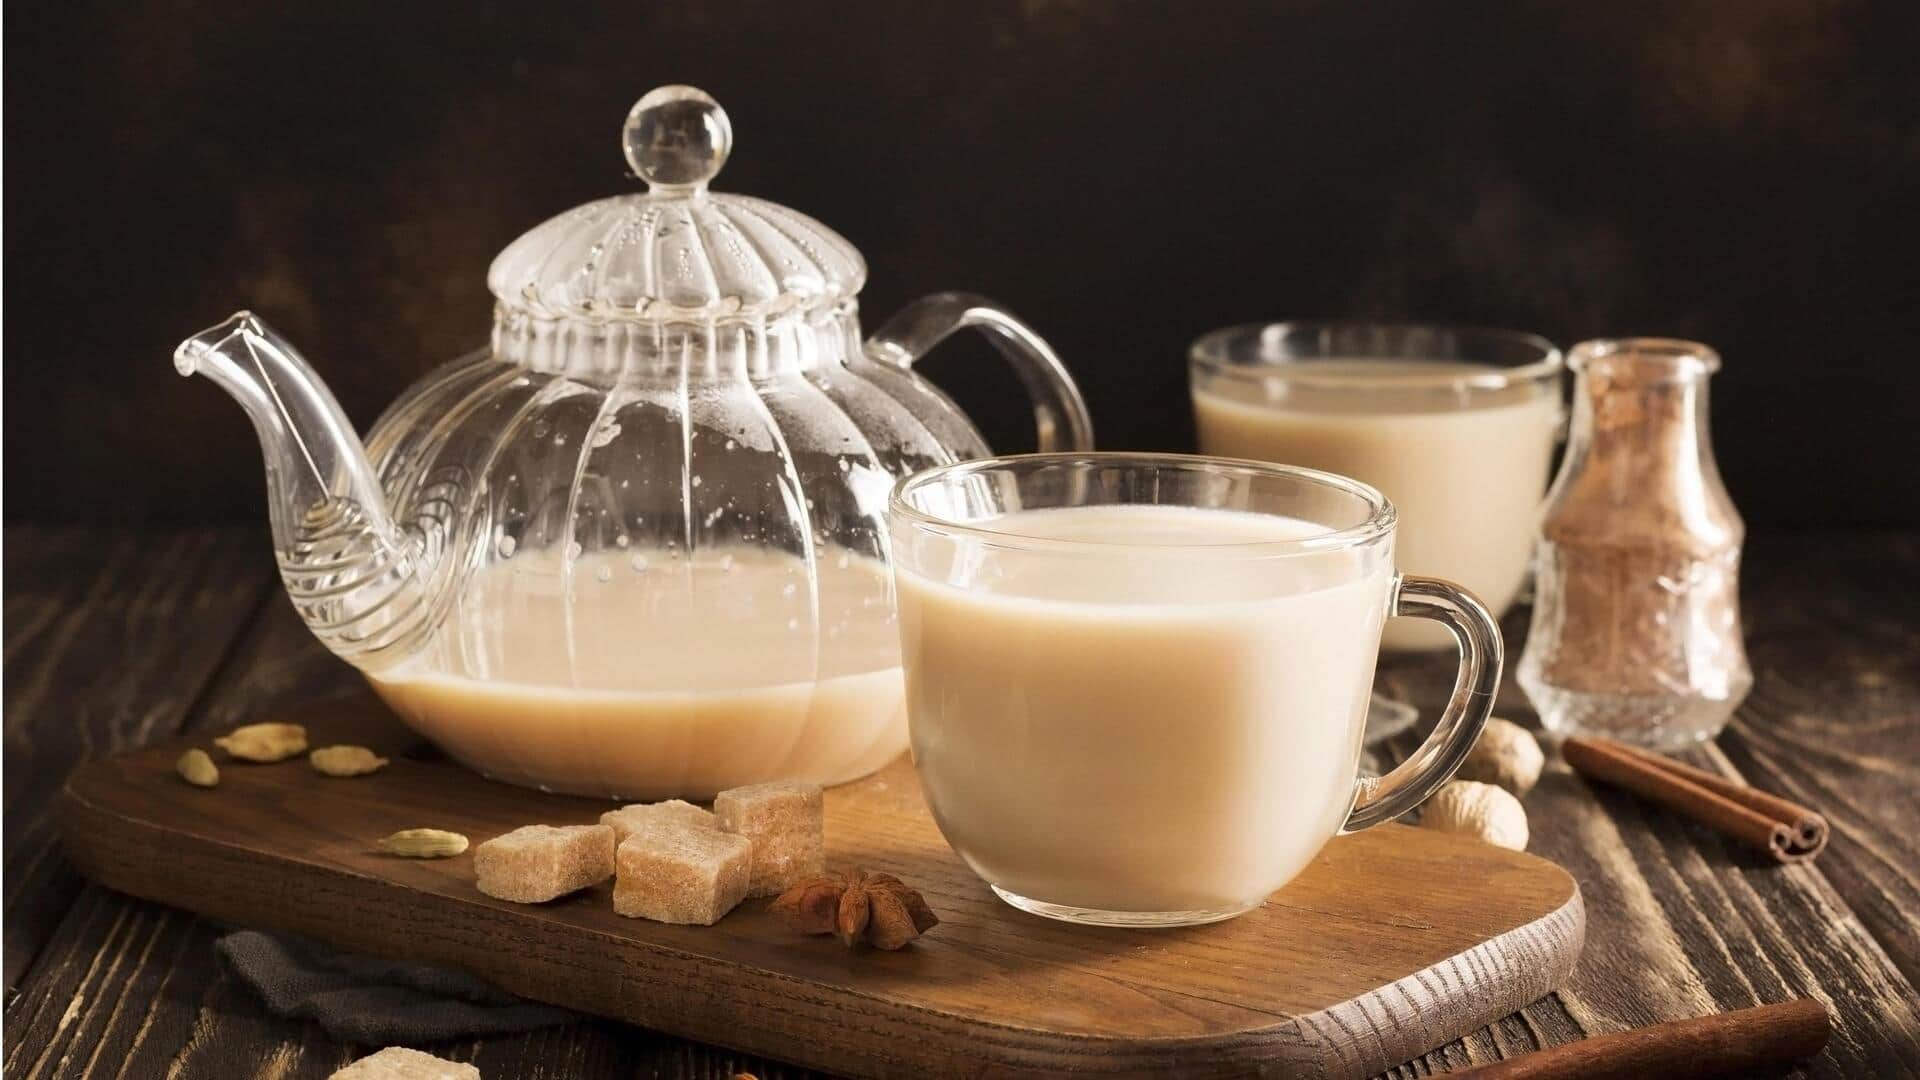 मक्खन की चाय से करें दिन की शुरुआत, जानिए रेसिपी और फायदे